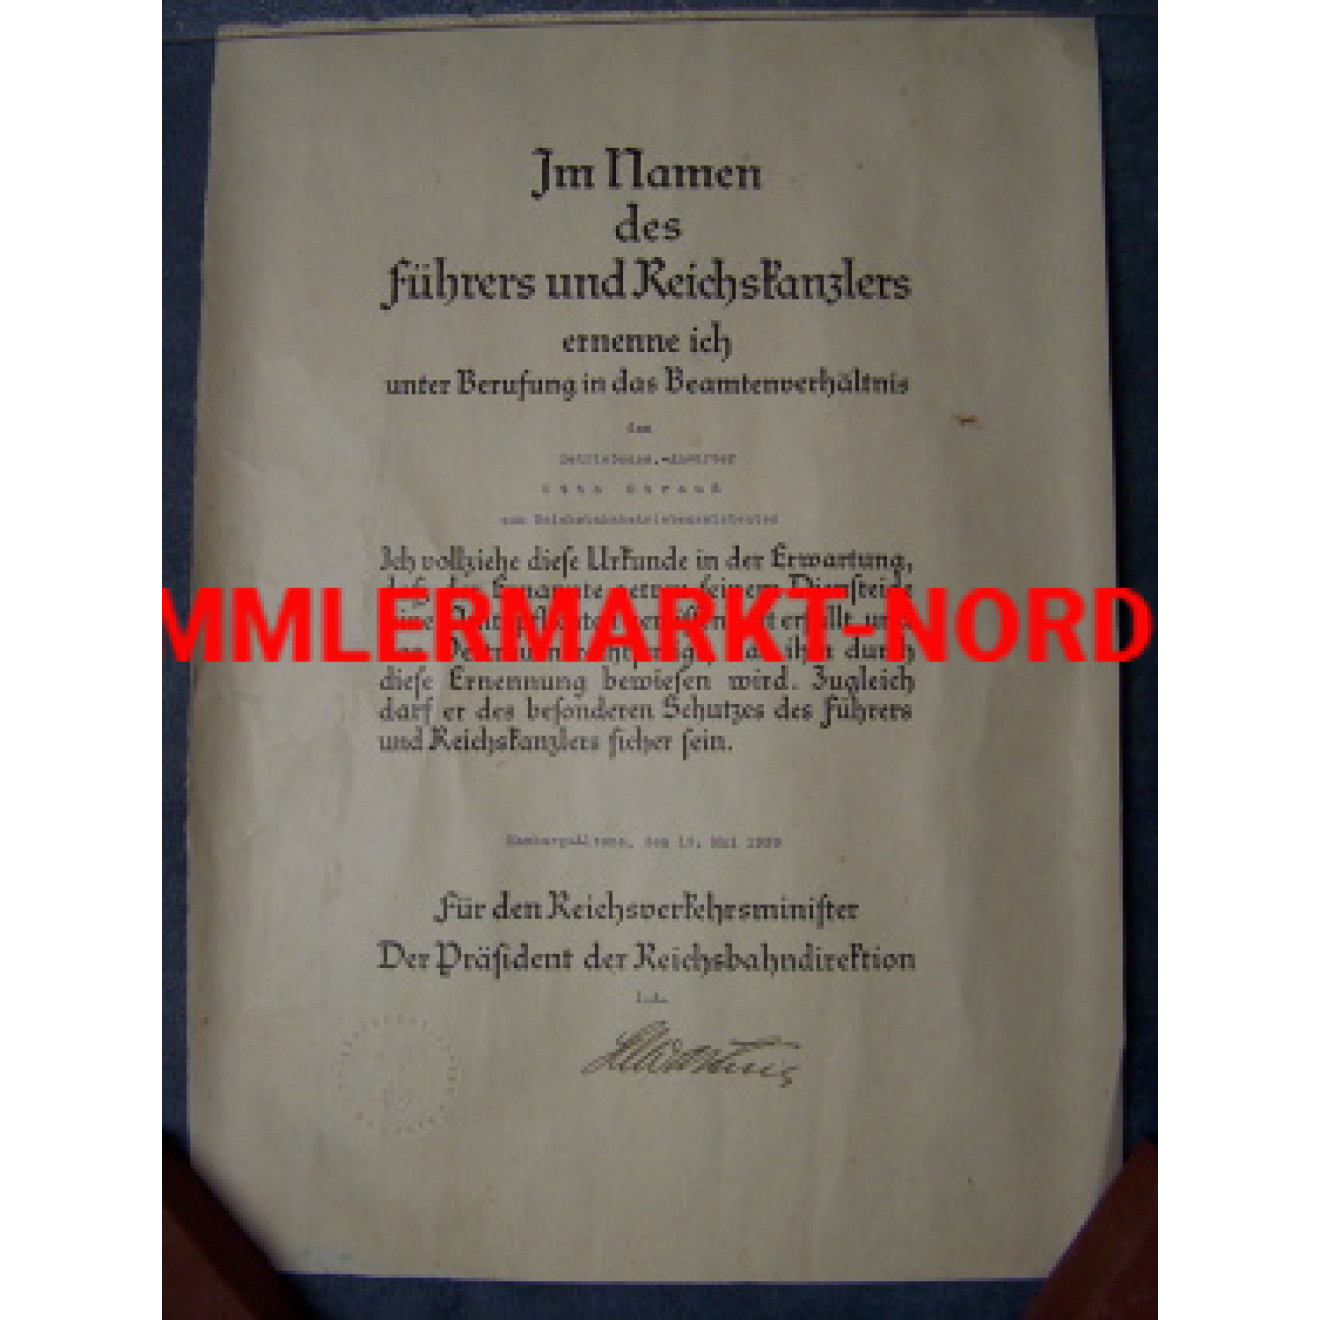 Promotion document to a Reichsbahnbetriebsassistenten